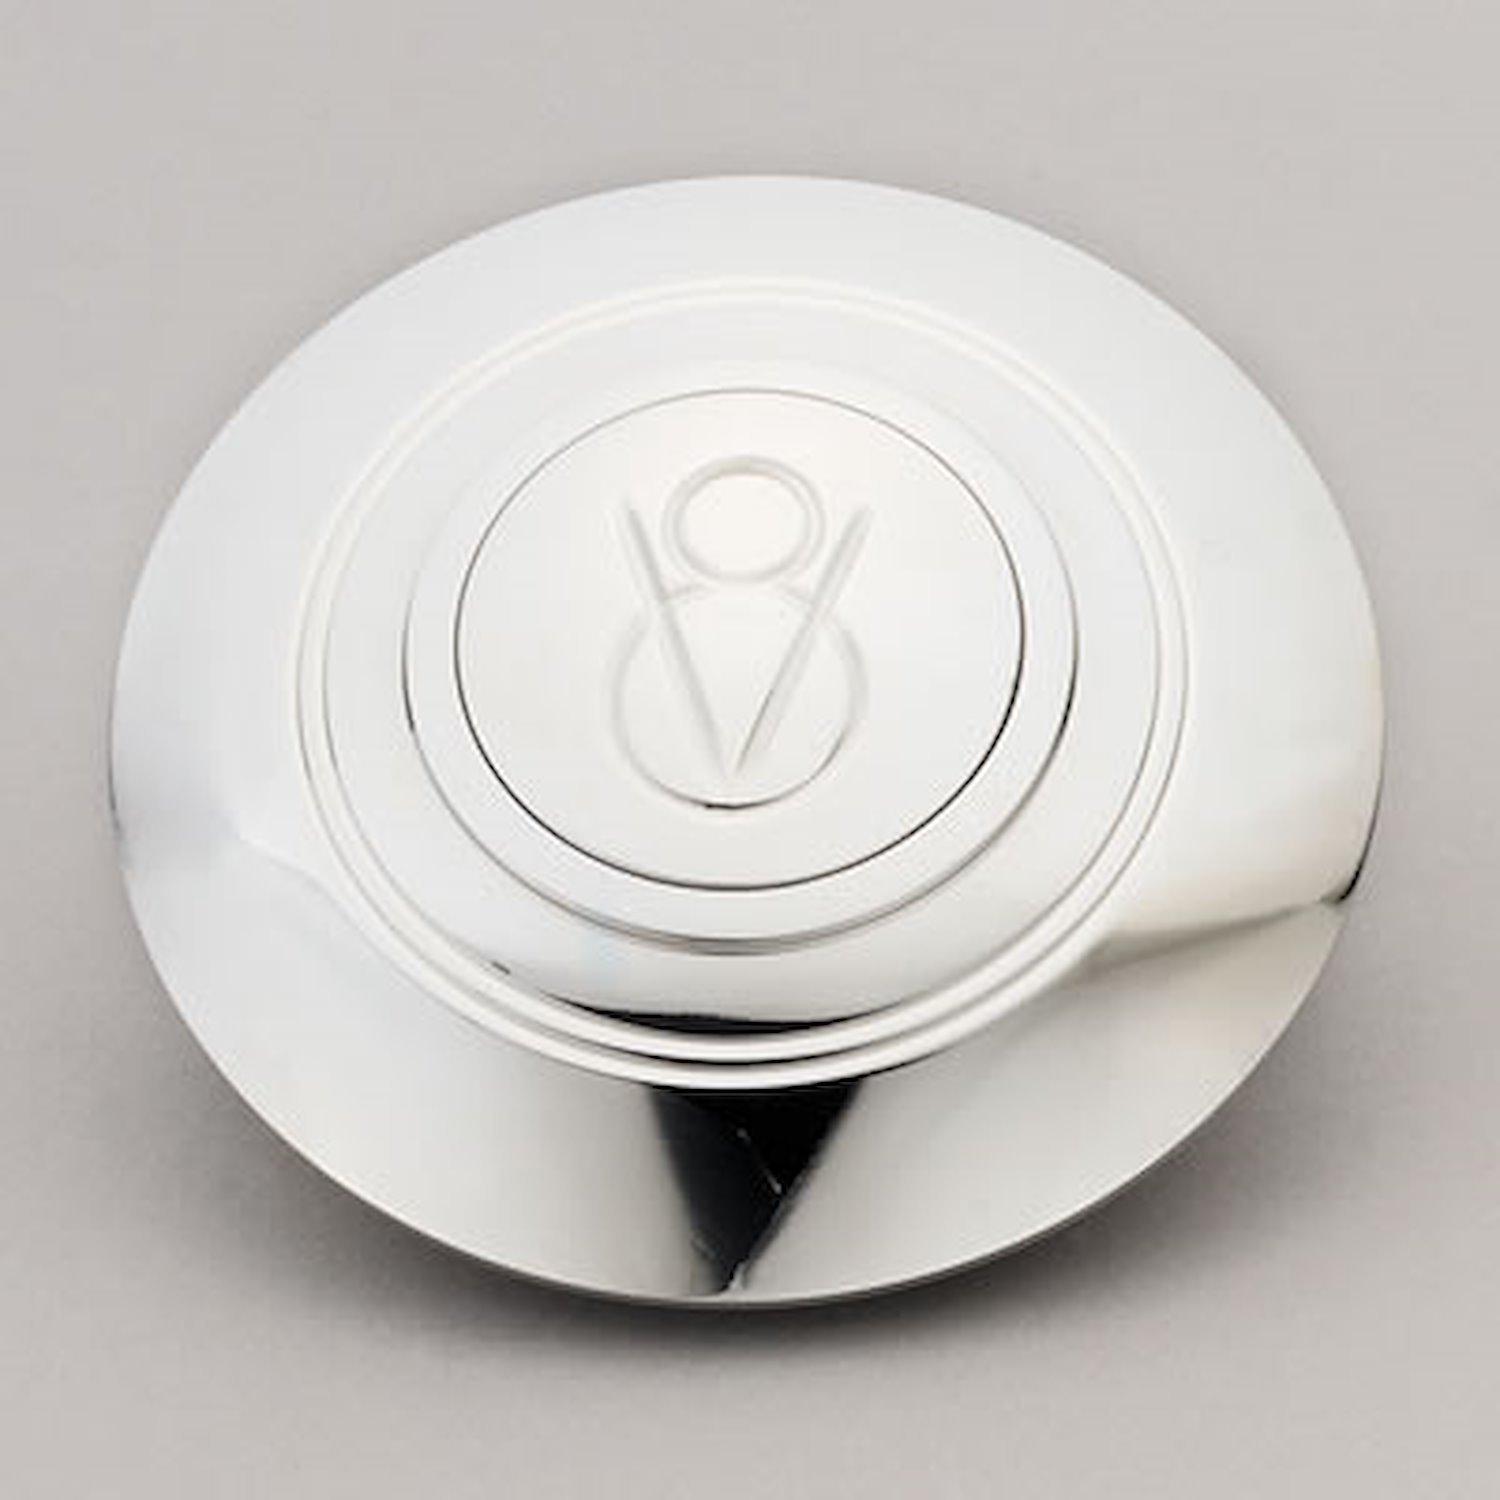 Horn Button Billet Aluminum